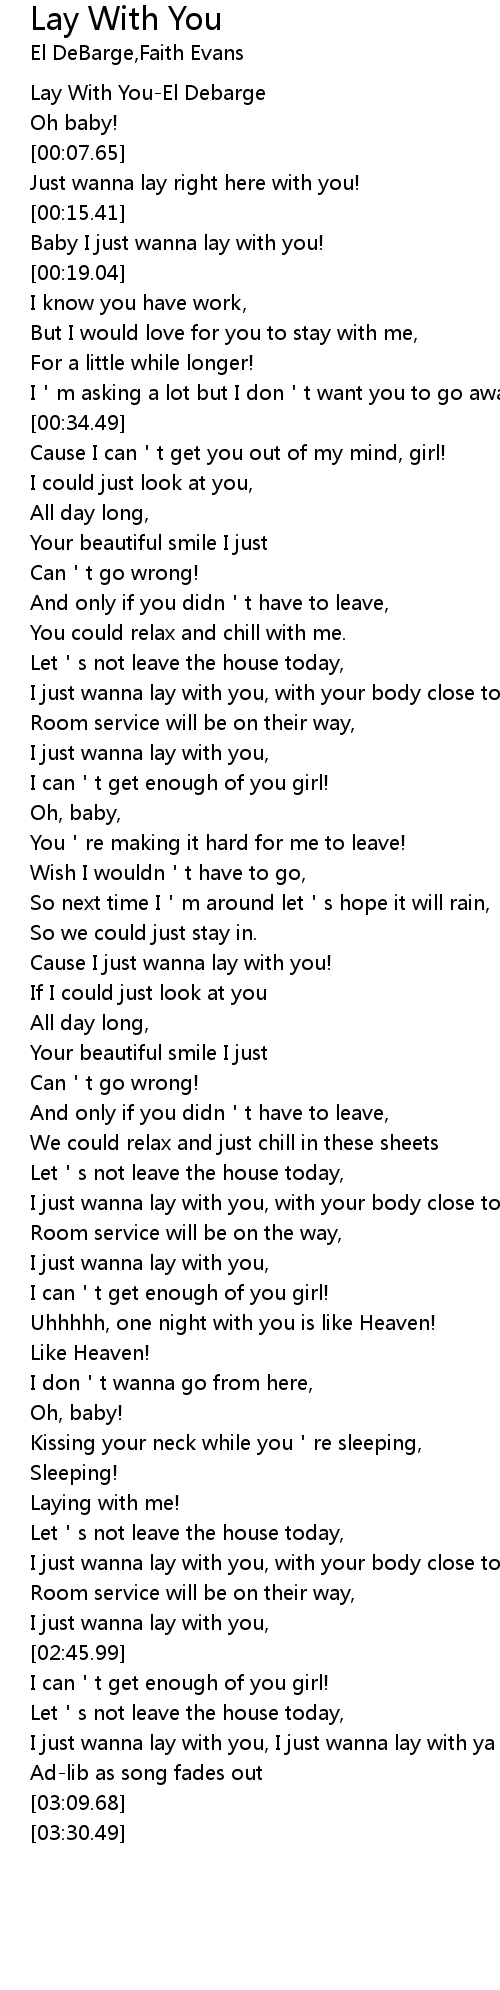 Lyrics enough for you Olivia Rodrigo